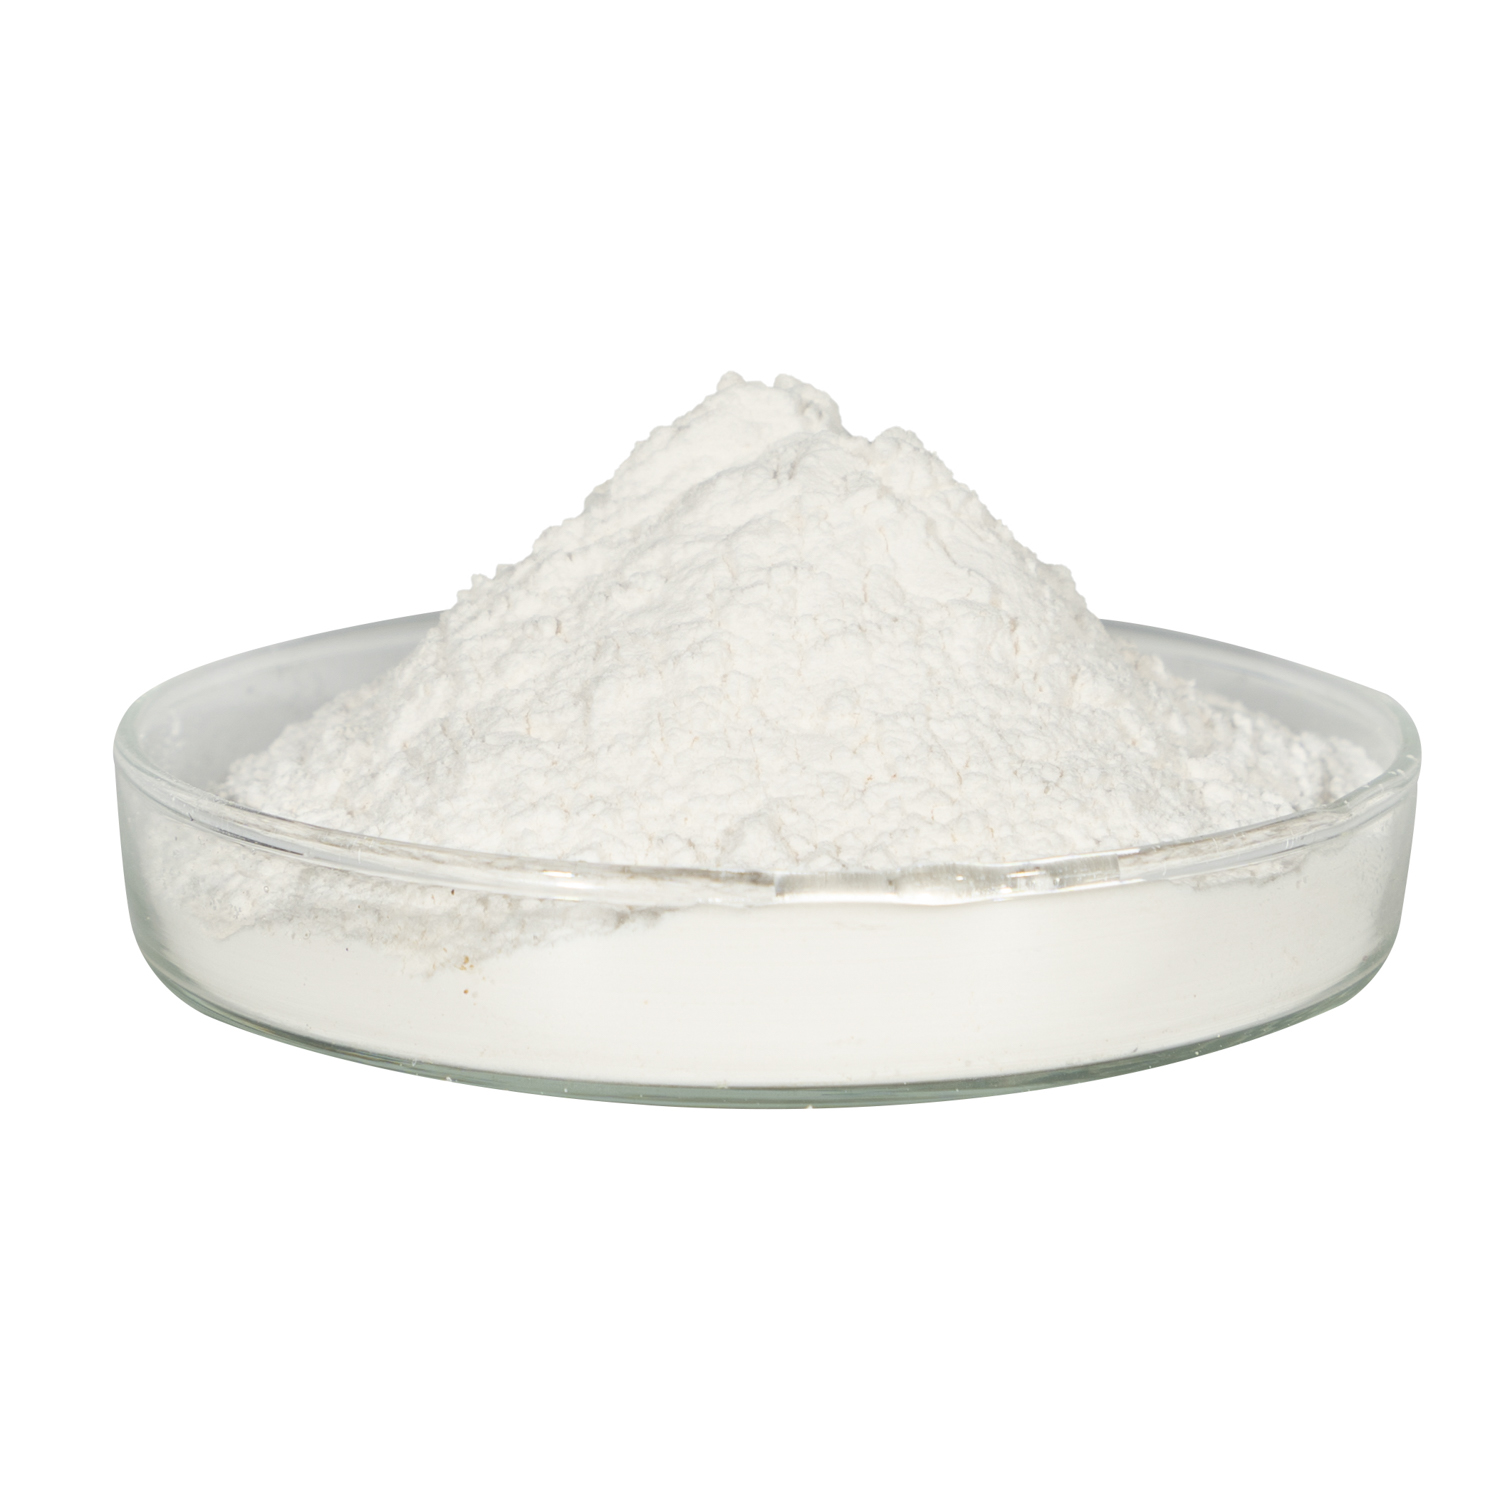 Mua Chất làm trắng 4,4''-Bis(chloromethyl)-1,1''-biphenyl Cas1667-10-3,Chất làm trắng 4,4''-Bis(chloromethyl)-1,1''-biphenyl Cas1667-10-3 Giá ,Chất làm trắng 4,4''-Bis(chloromethyl)-1,1''-biphenyl Cas1667-10-3 Brands,Chất làm trắng 4,4''-Bis(chloromethyl)-1,1''-biphenyl Cas1667-10-3 Nhà sản xuất,Chất làm trắng 4,4''-Bis(chloromethyl)-1,1''-biphenyl Cas1667-10-3 Quotes,Chất làm trắng 4,4''-Bis(chloromethyl)-1,1''-biphenyl Cas1667-10-3 Công ty